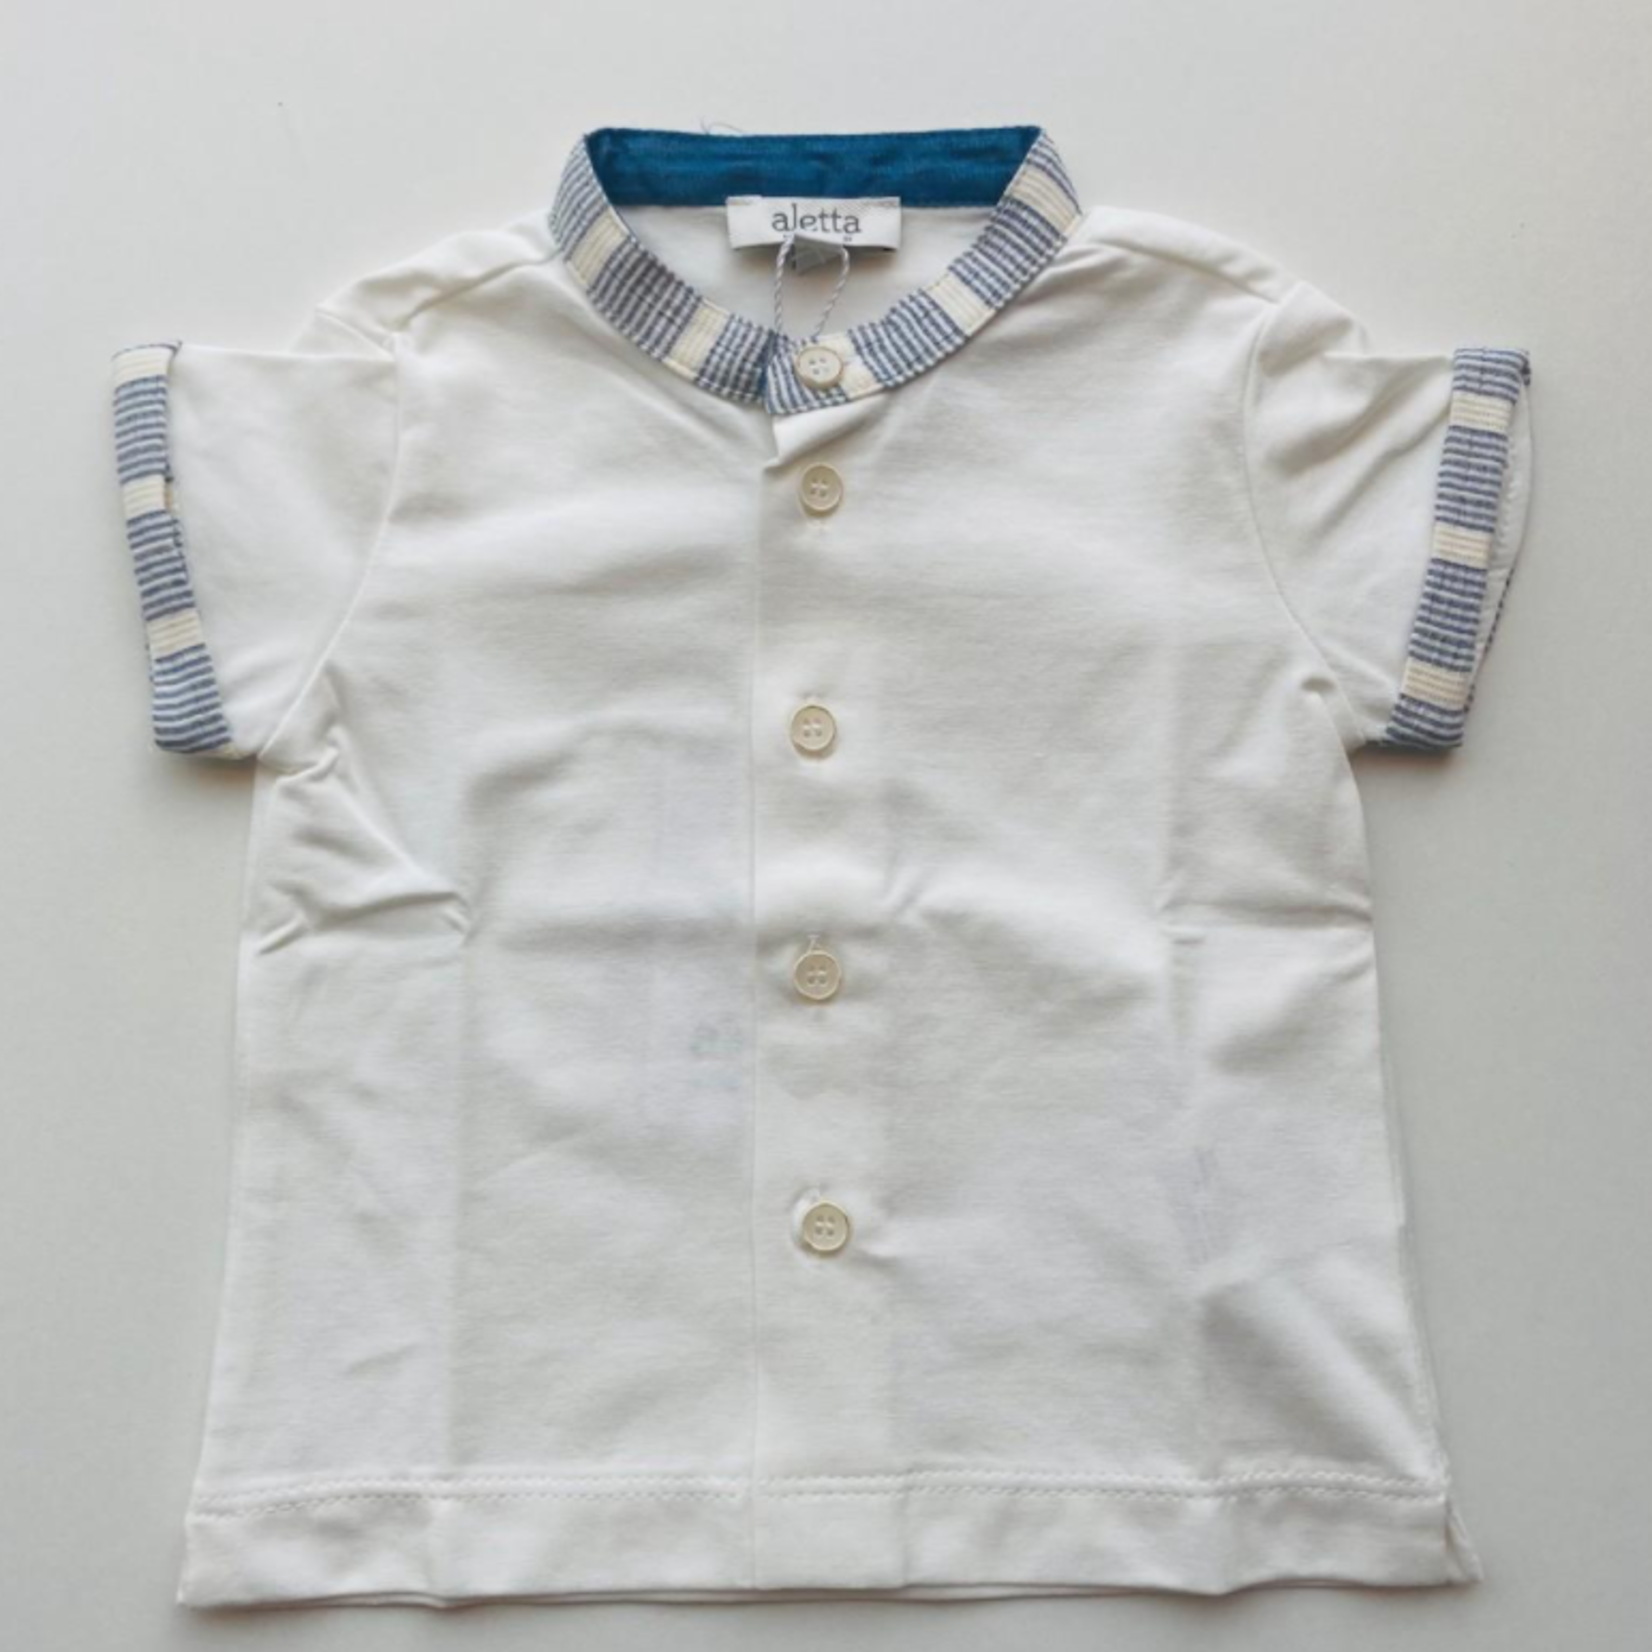 Aletta Aletta - T-shirt in wit met detail in jeans blauw